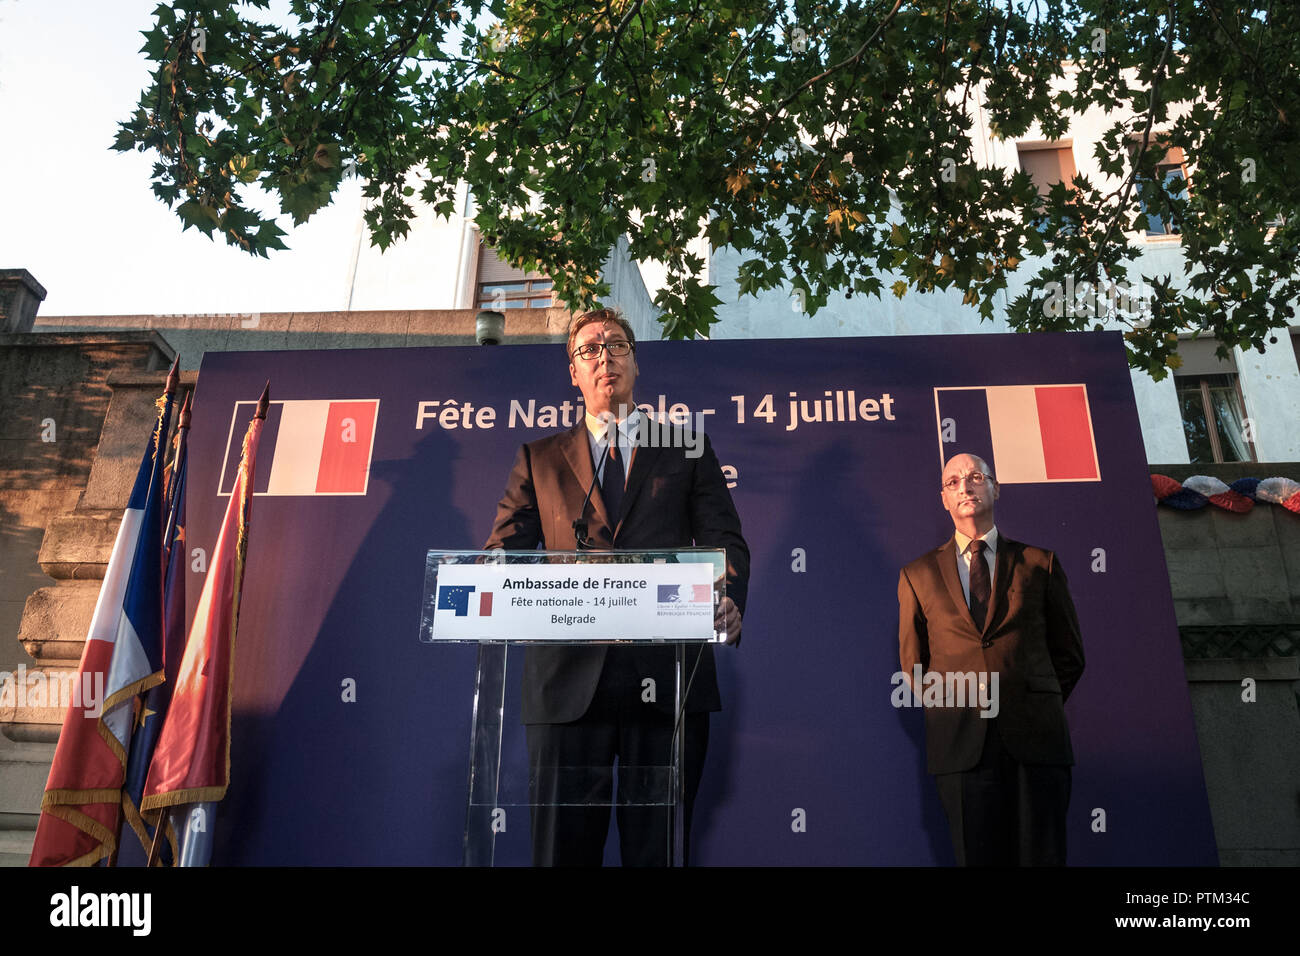 Belgrado, Serbia - Luglio 14, 2018: Aleksandar Vucic, Presidente della Repubblica di Serbia in piedi e fare un discorso presso la sede dell' ambasciata di Francia con French Embassador Fred Foto Stock